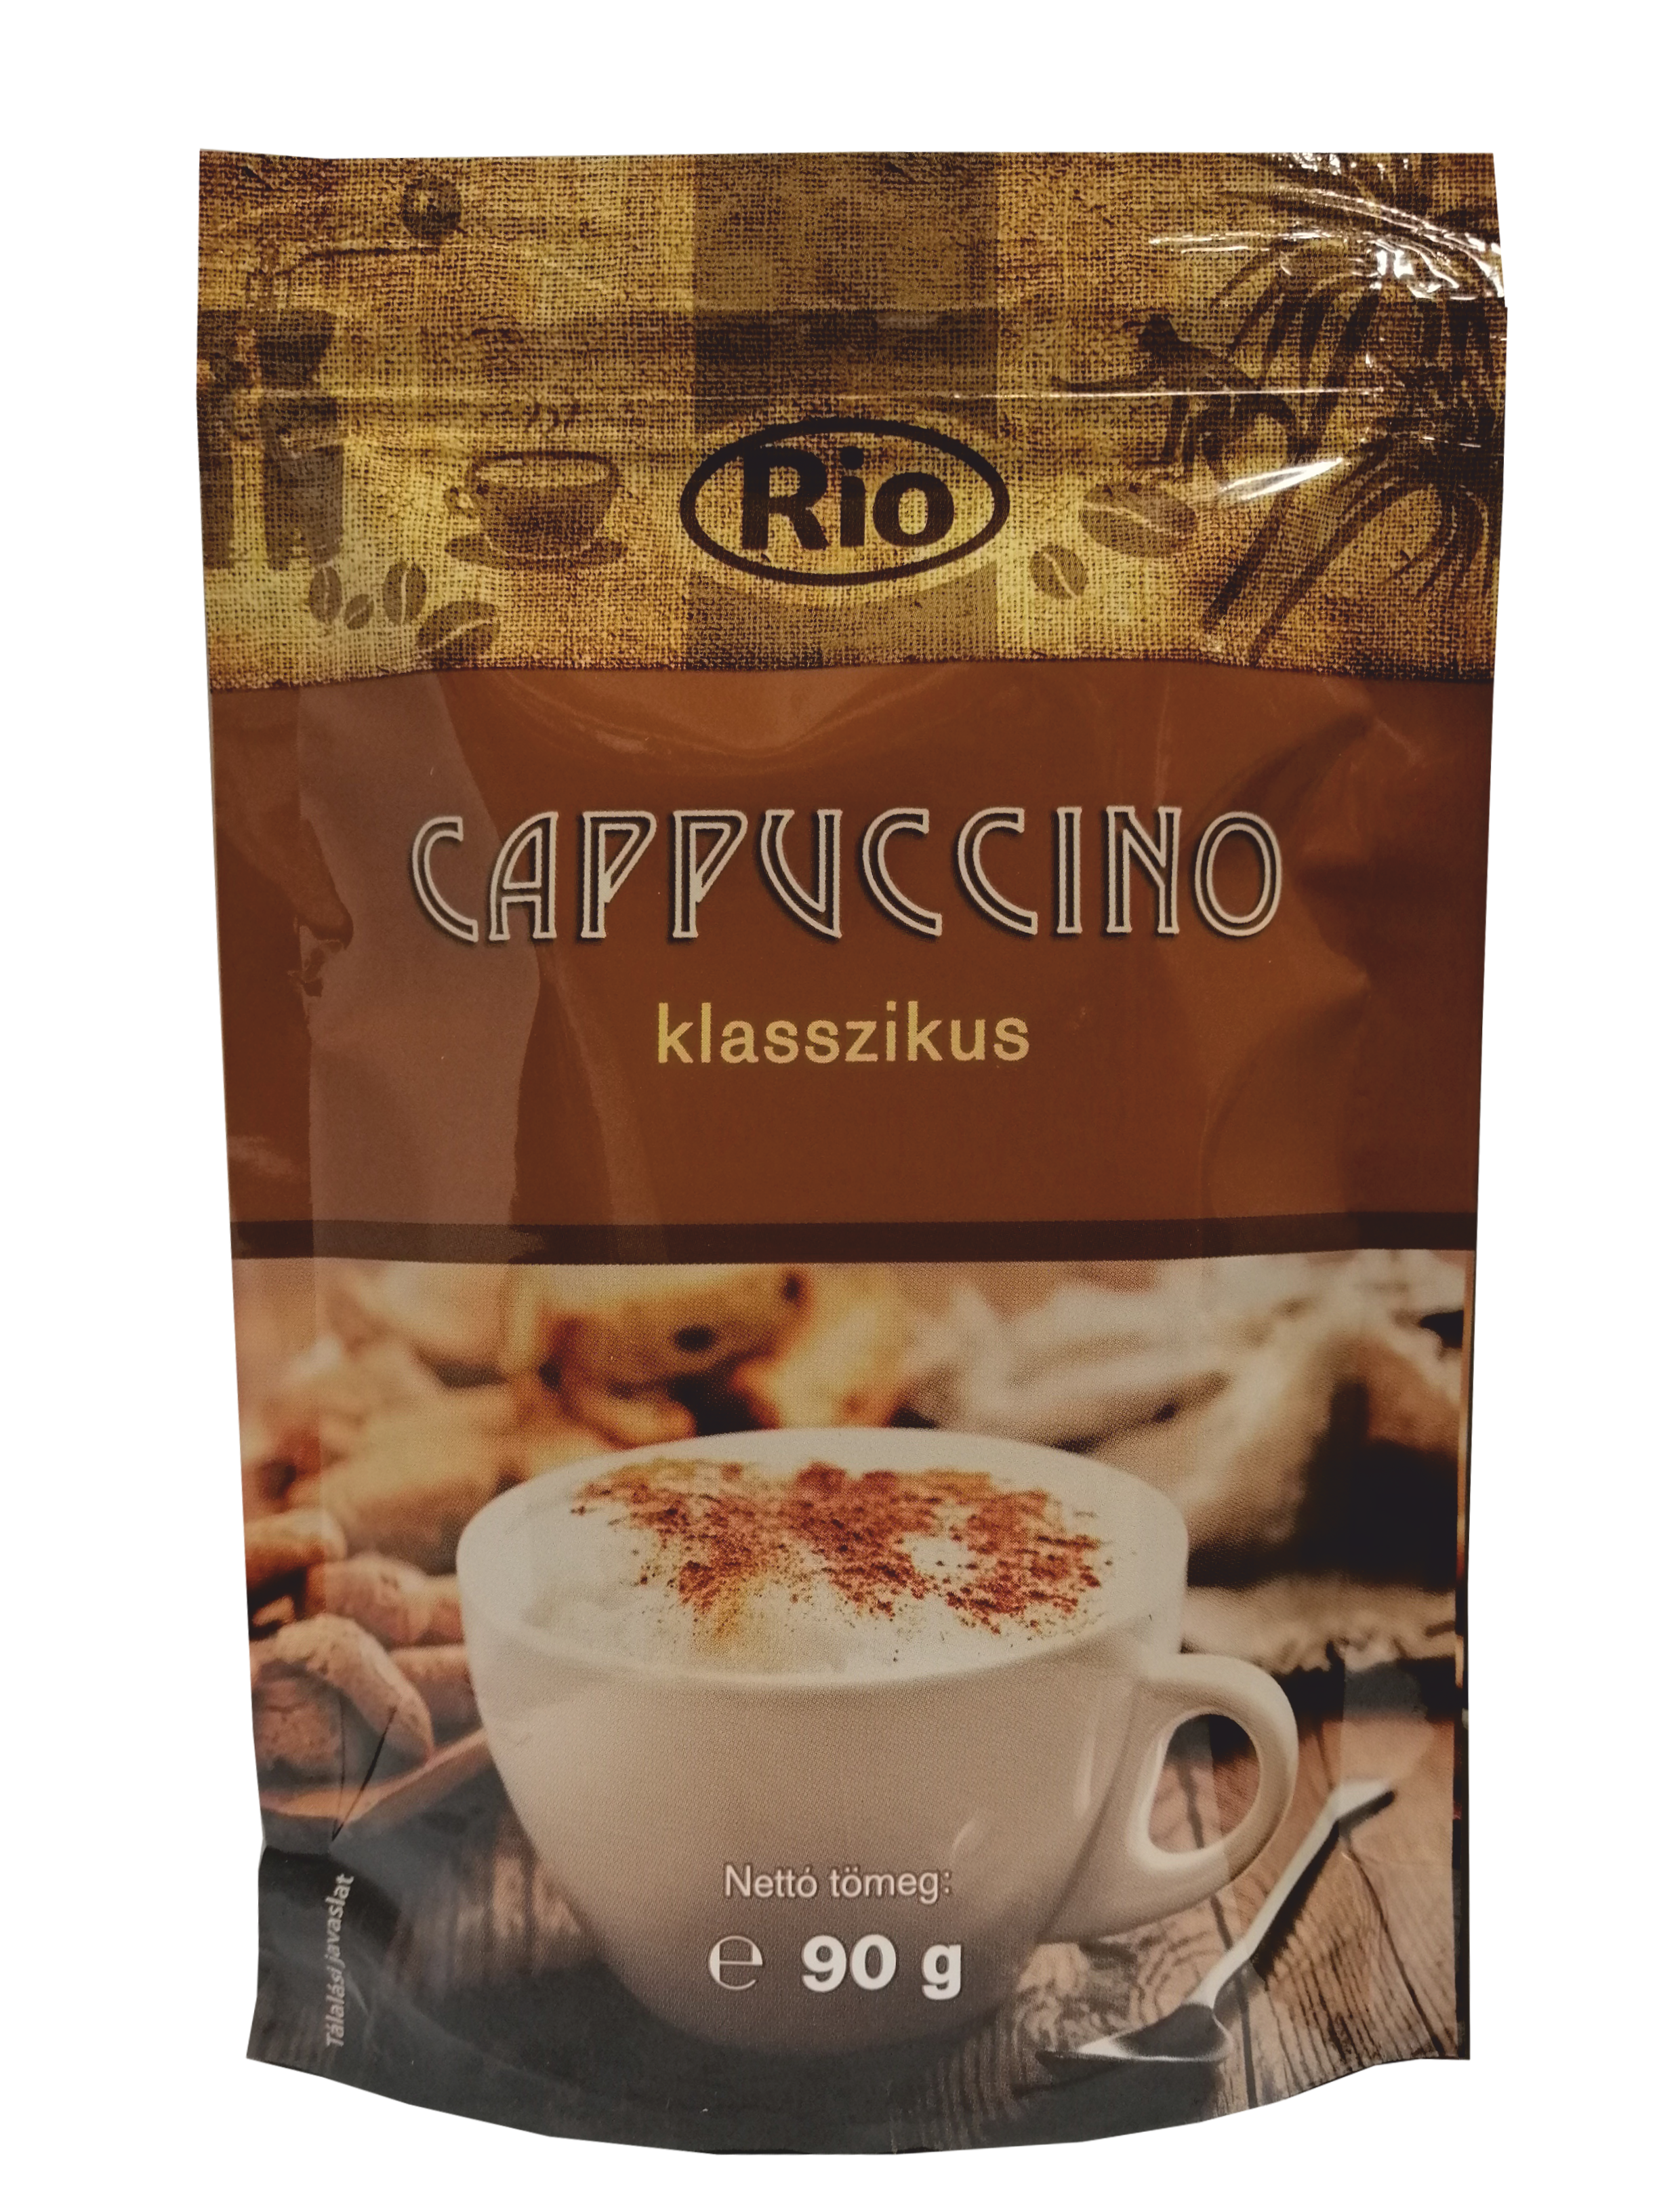 .Rio cappuccino 90g classic